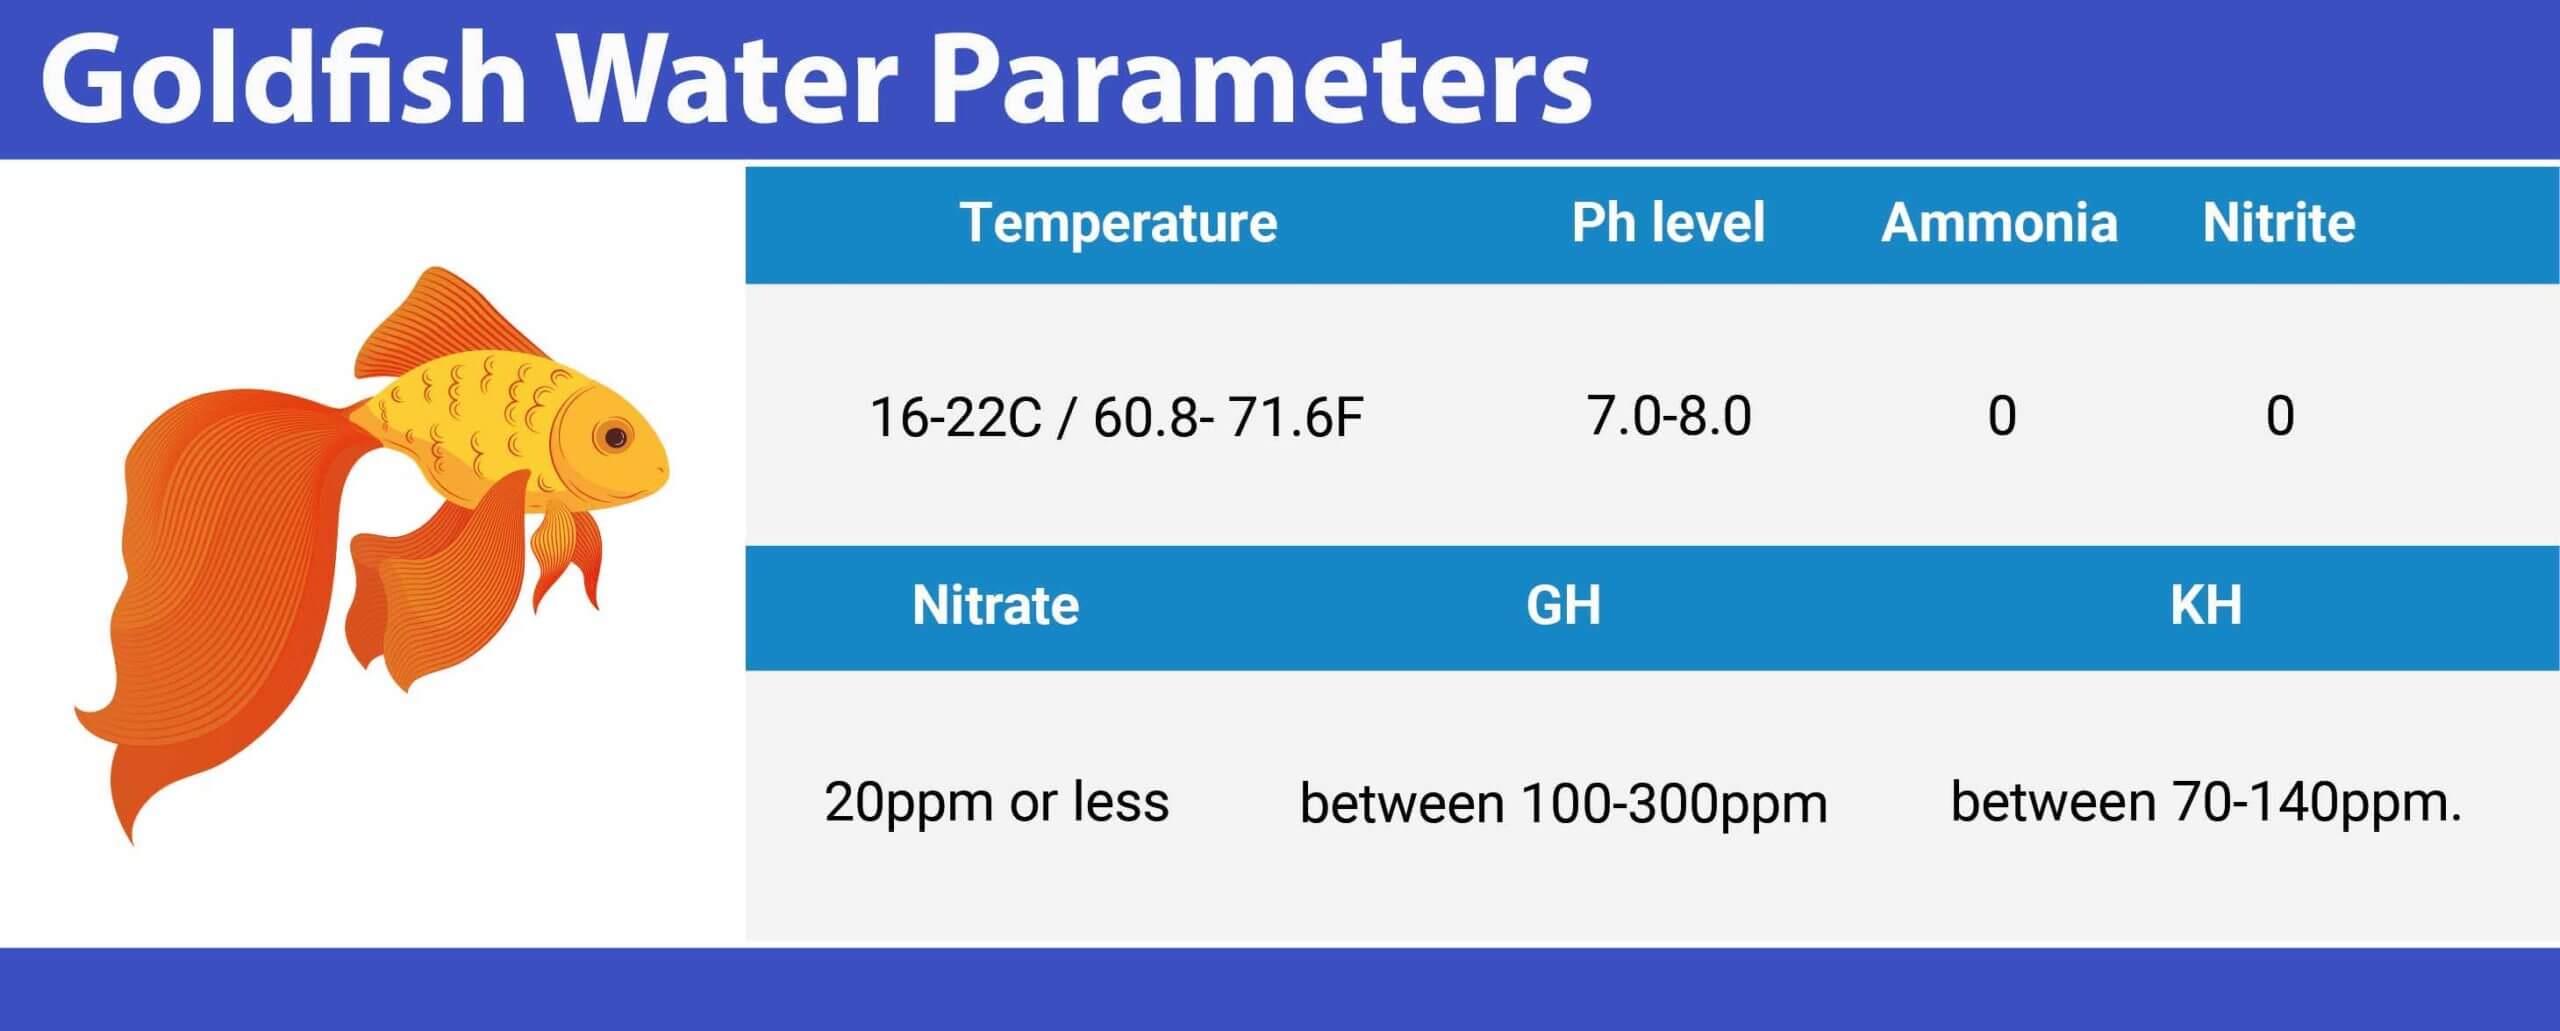 Goldfish Water Parameters